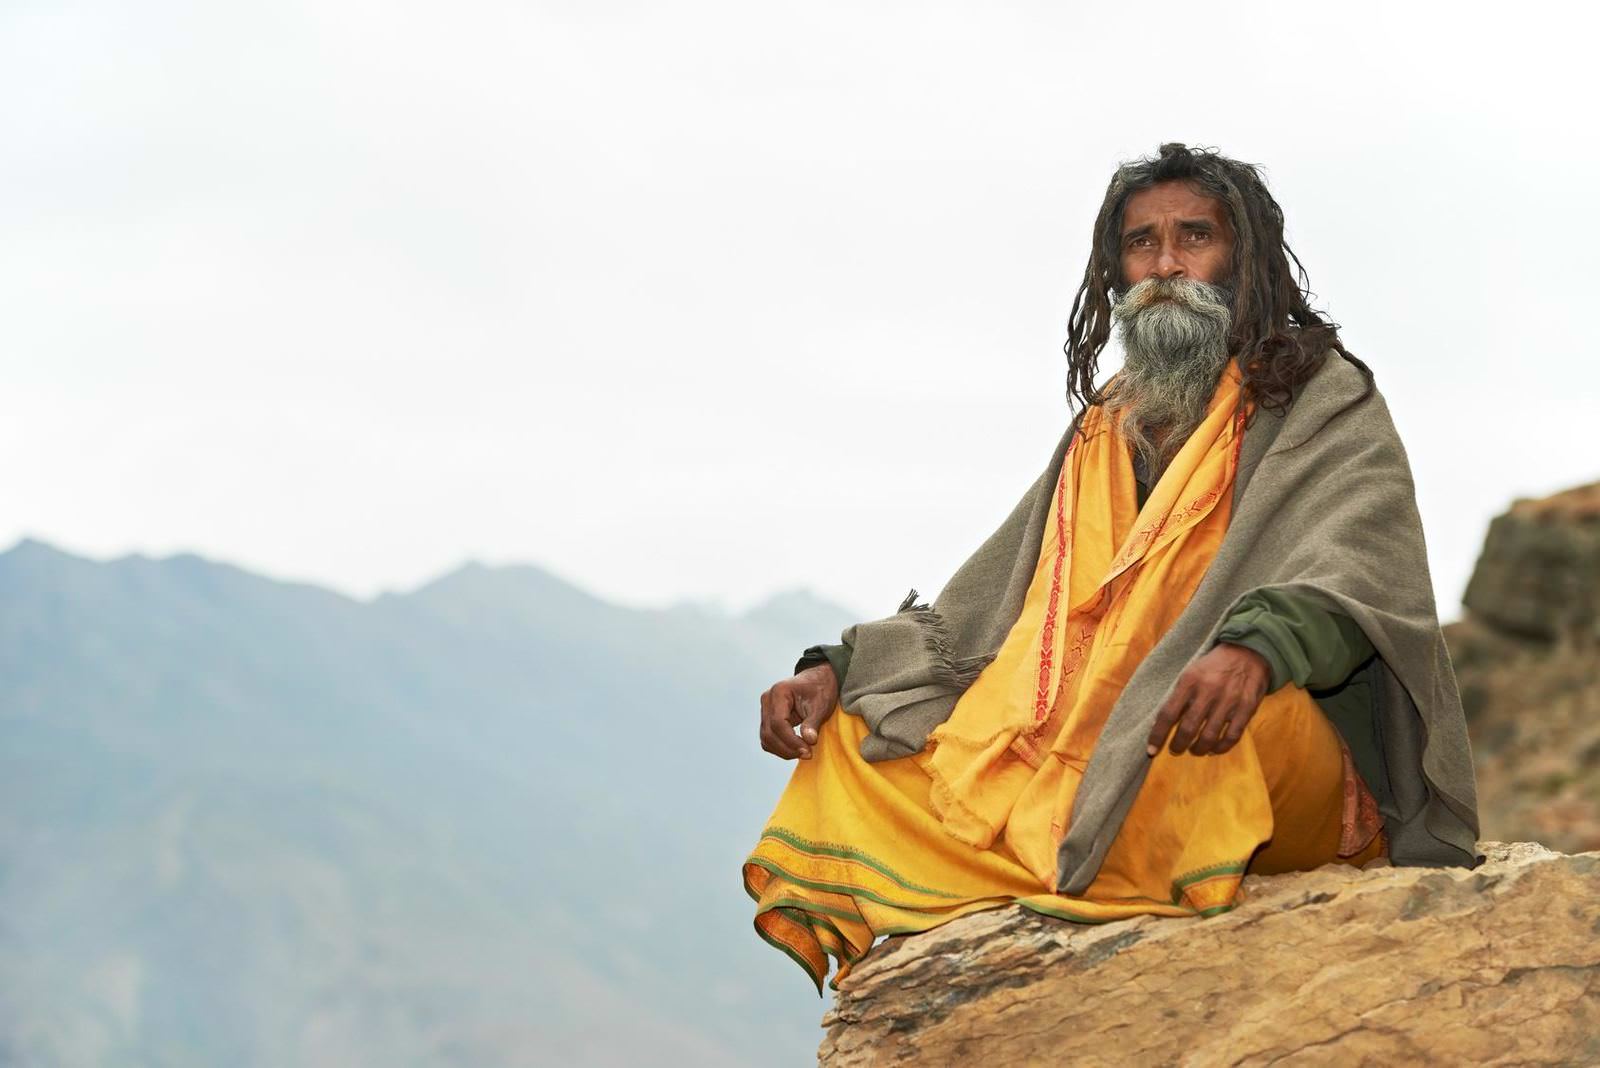 Indian old monk sadhu in saffron color clothing